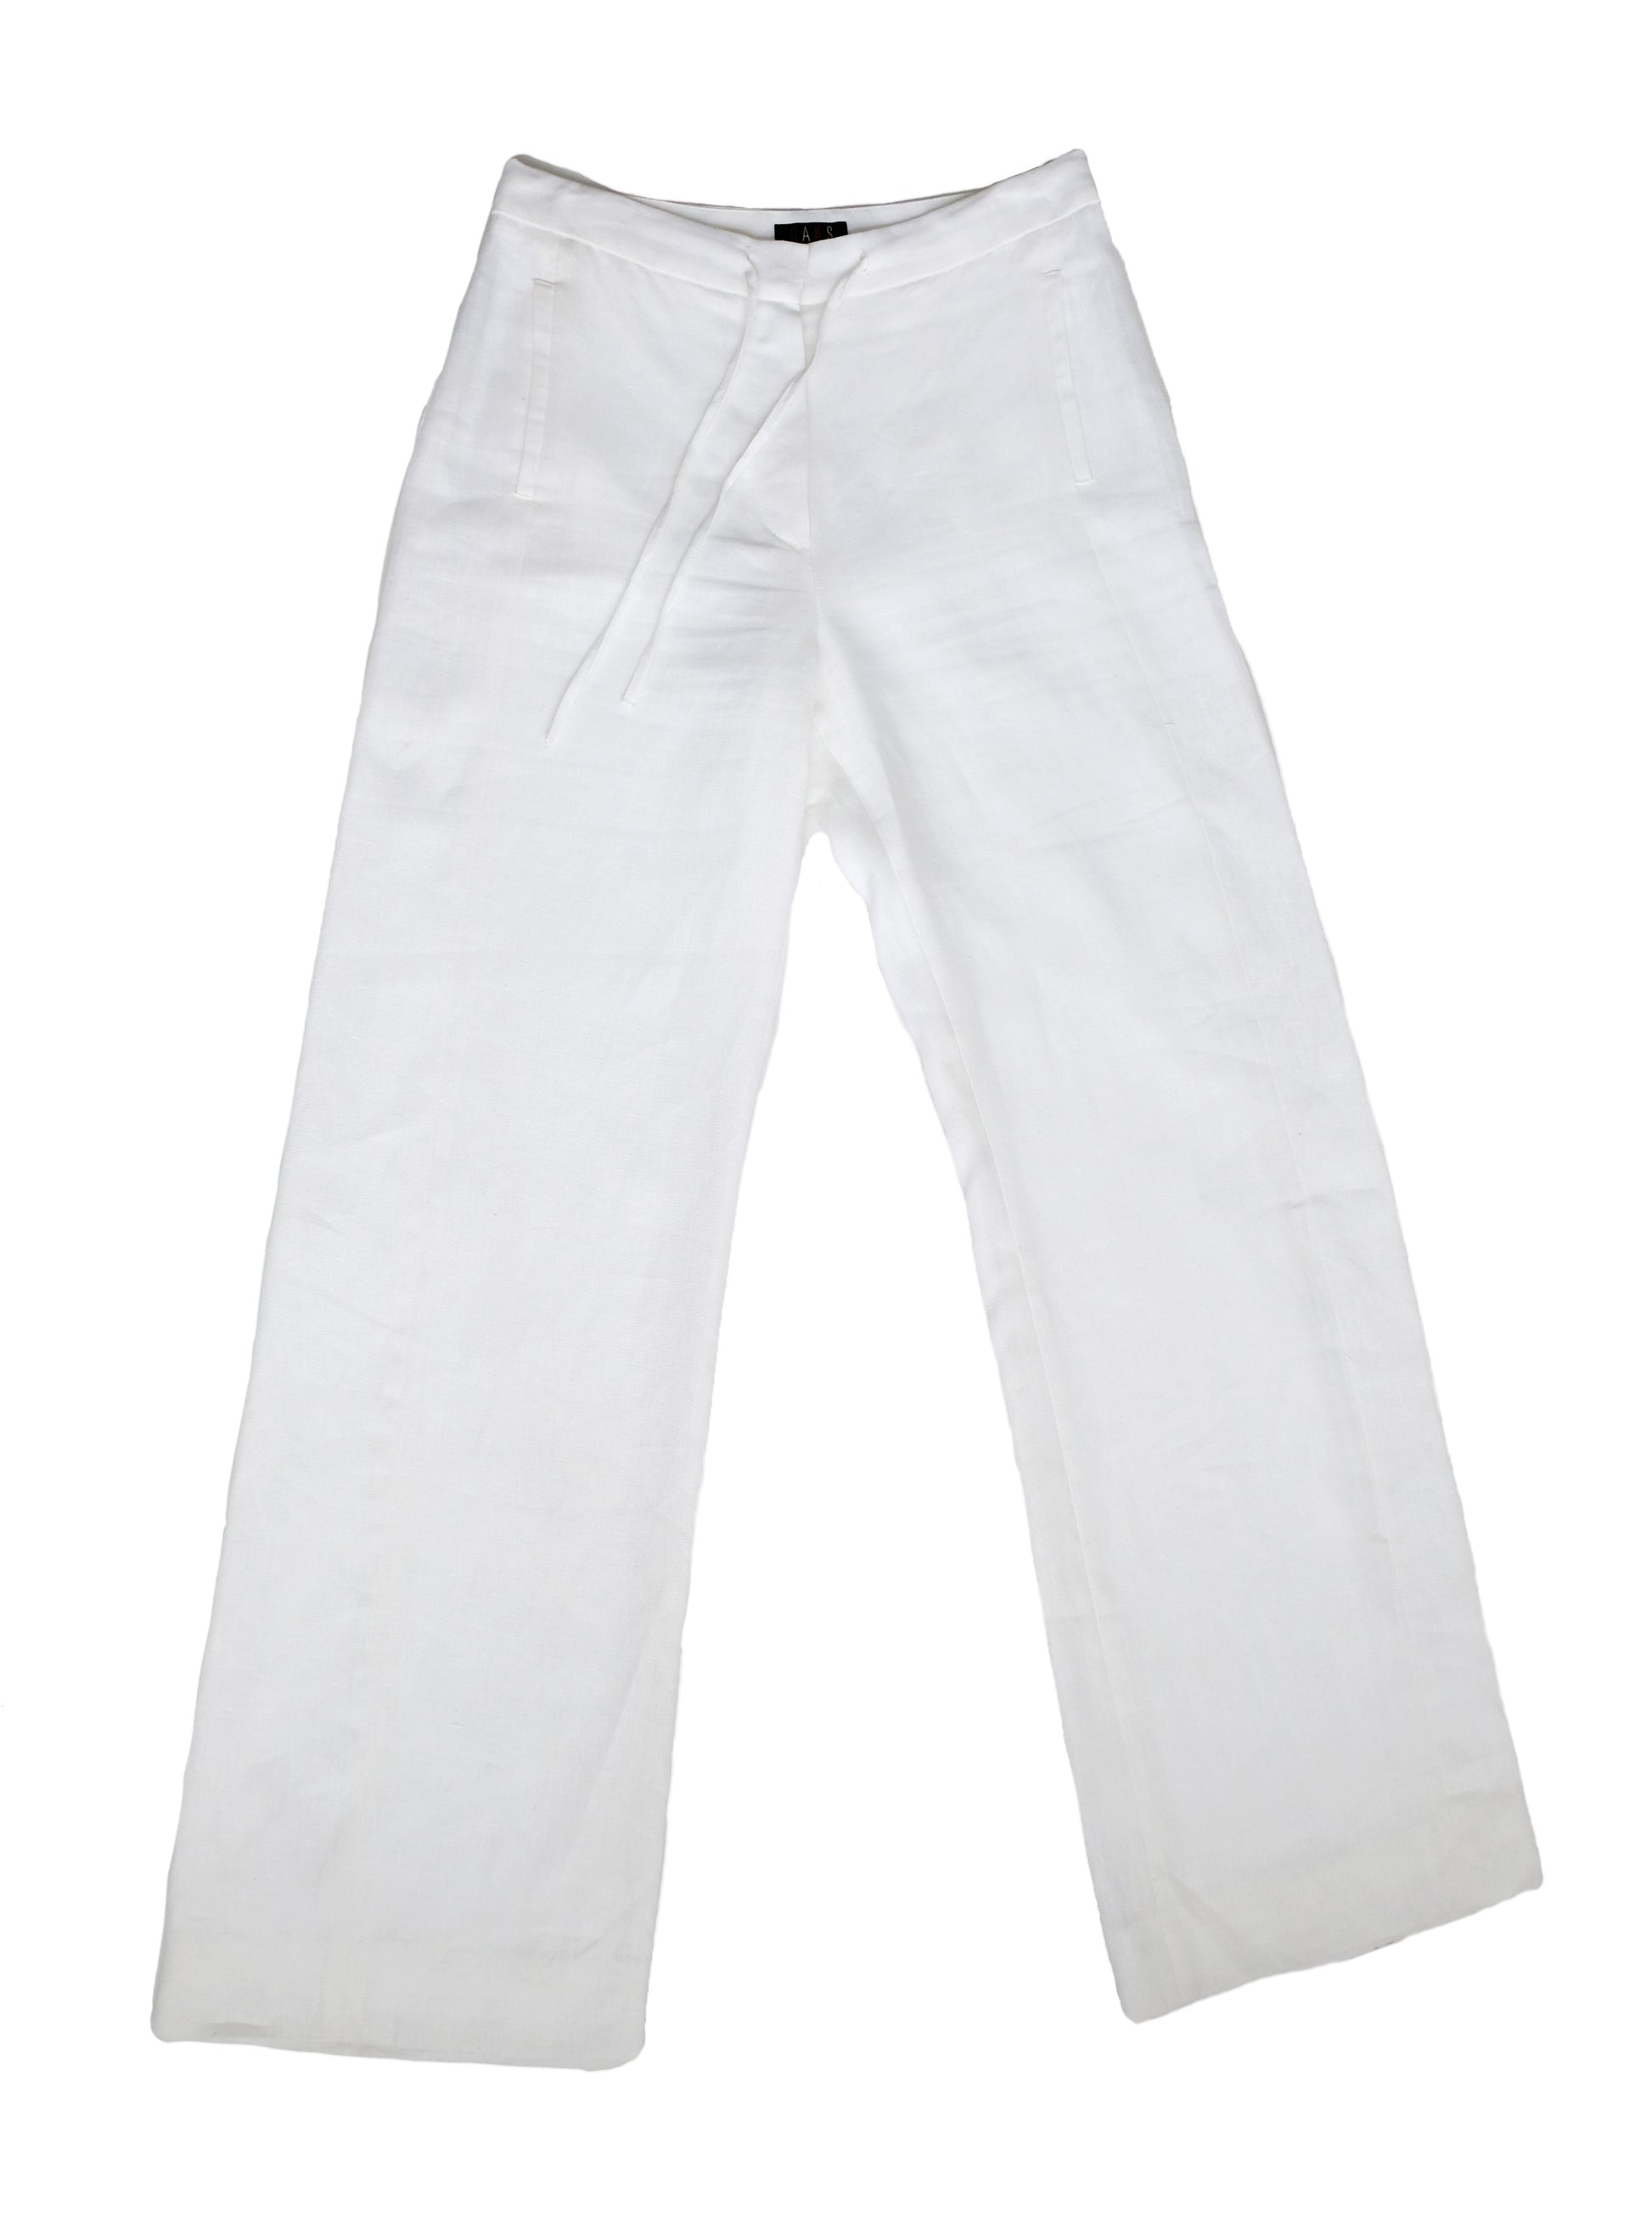 DAKS Wide Leg Trousers in White Linen, UK10